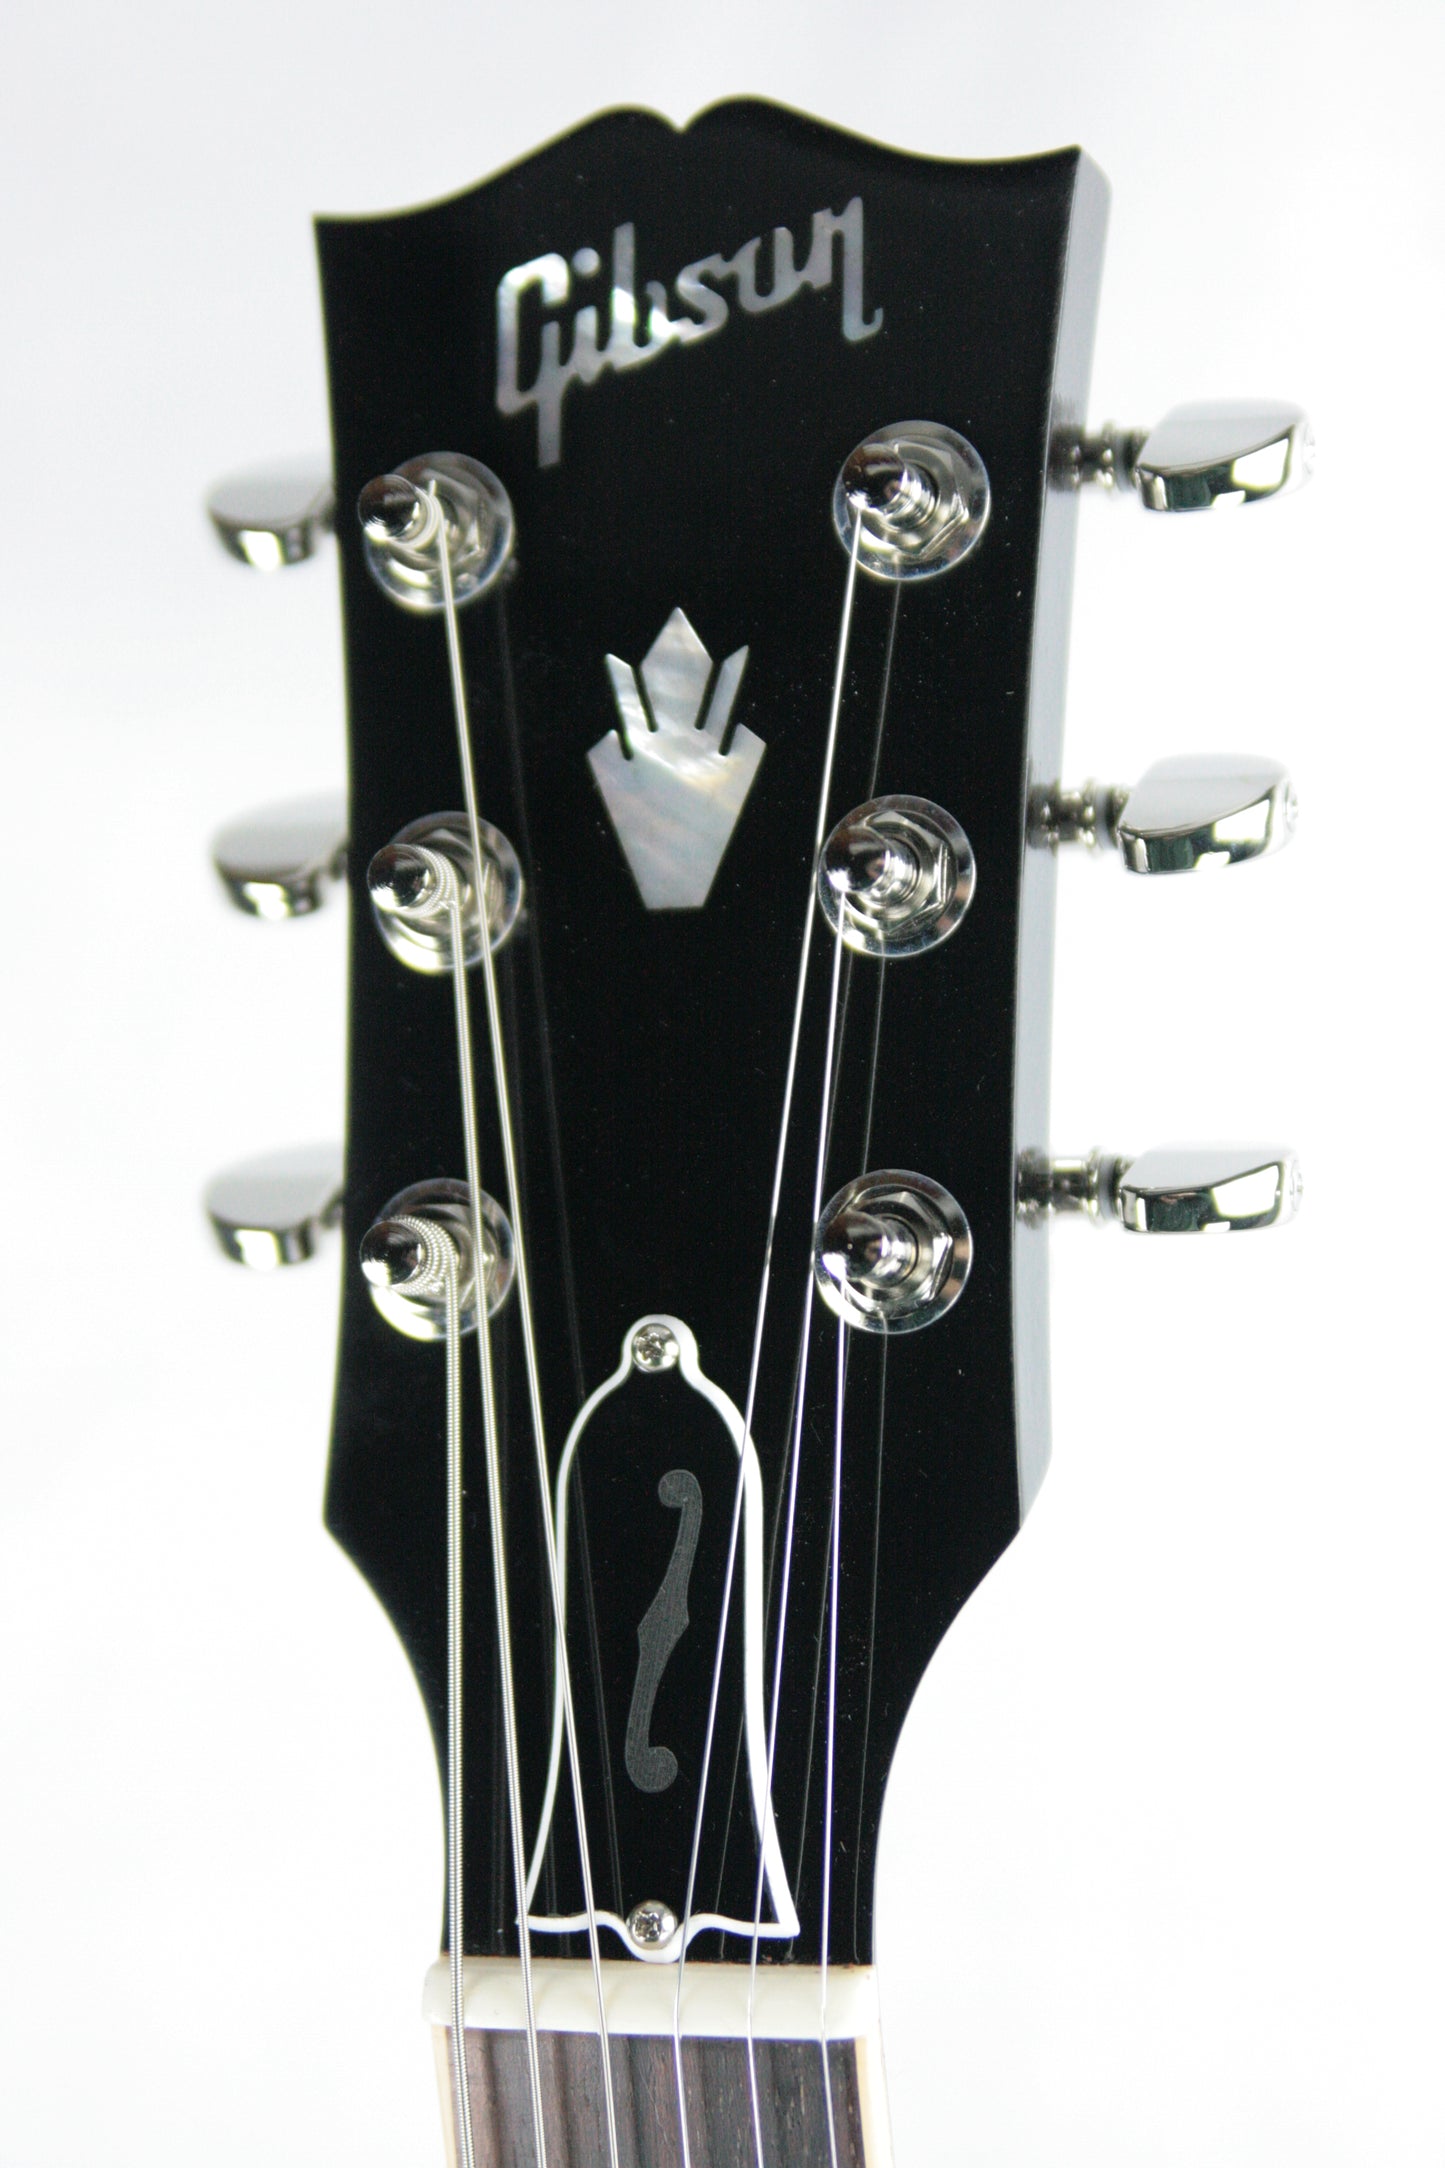 2017 Gibson ES-335 FIGURED Faded Light Burst Flametop! Block inlays! Memphis 345 355